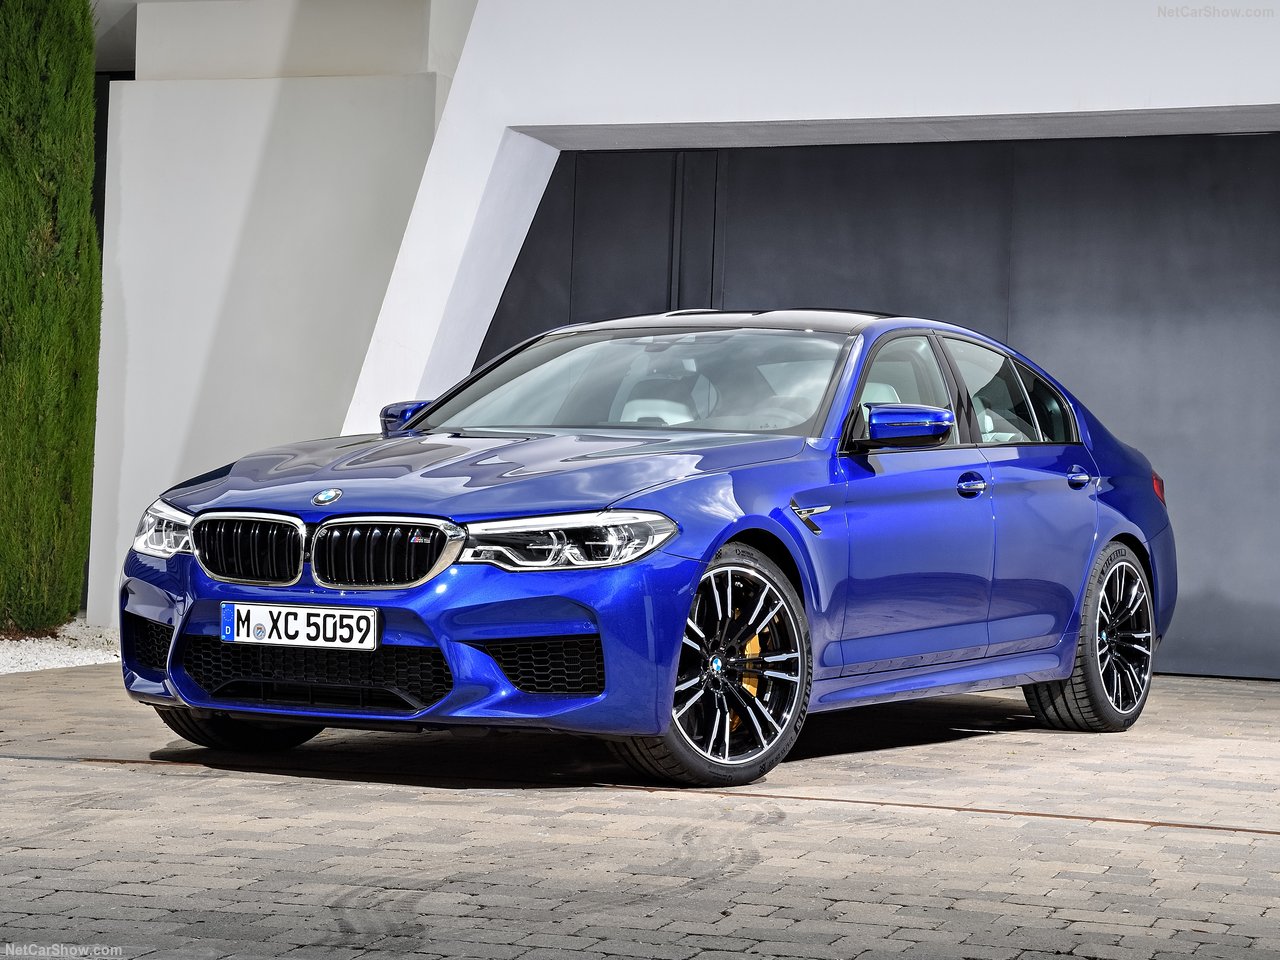 Novo BMW M5 traz tração integral pela primeira vez, mas pode acelerar apenas com tração traseira